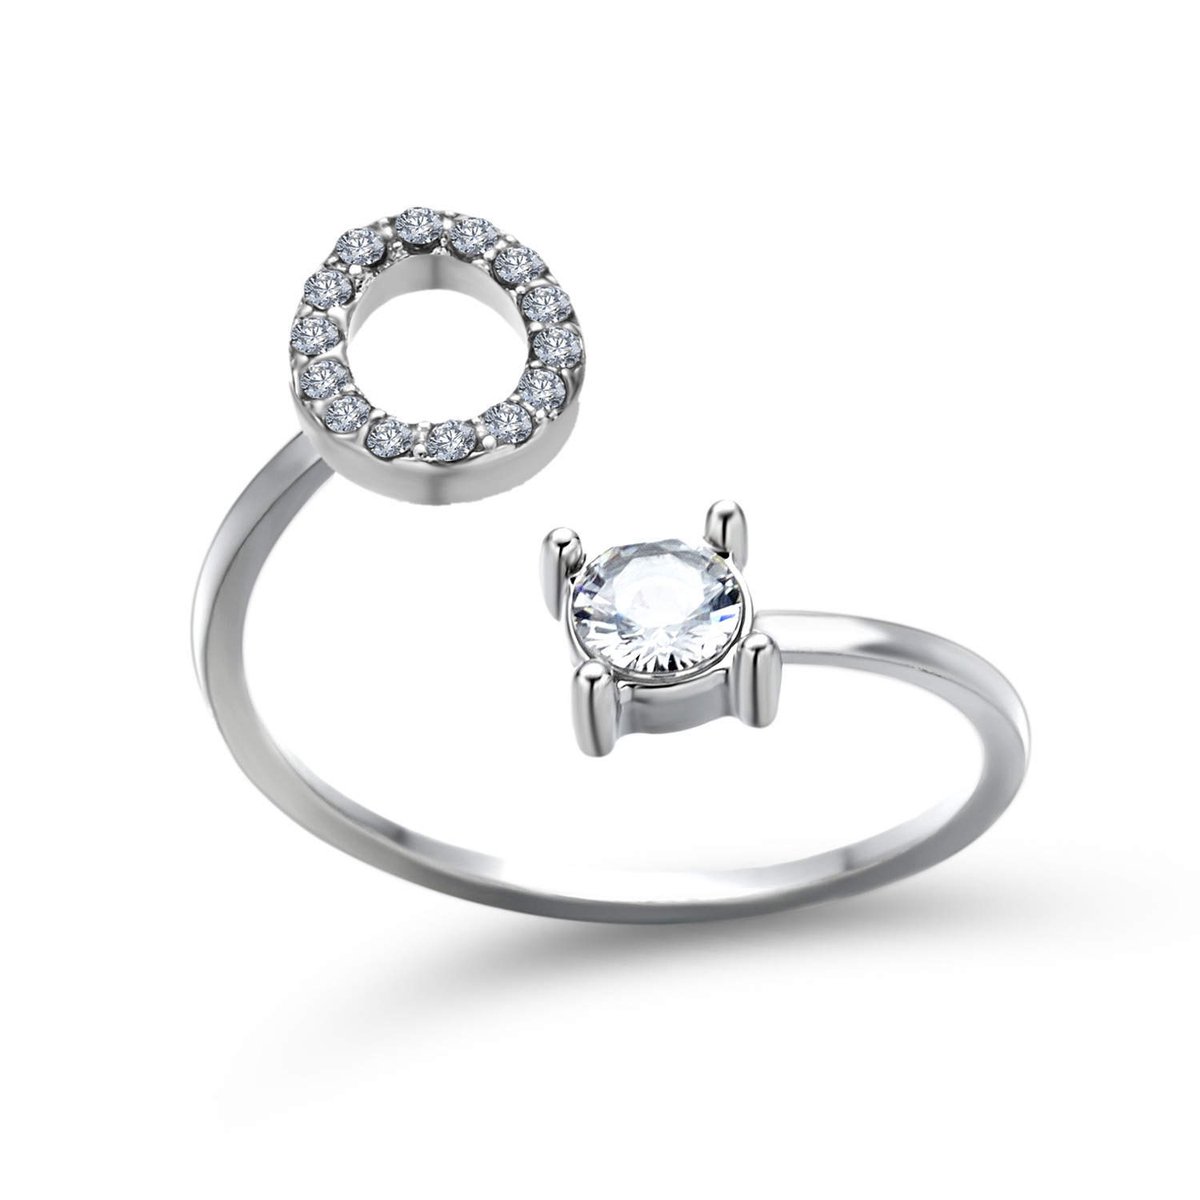 Ring met letter O - Ring met steen - Aanschuifring - Zilver kleurig - Ring Zilver dames - Cadeau voor vriendin - Vrouw - Sieraad meisje - Mooie ring tieners - Alfabet ring O - Ring met initiaal